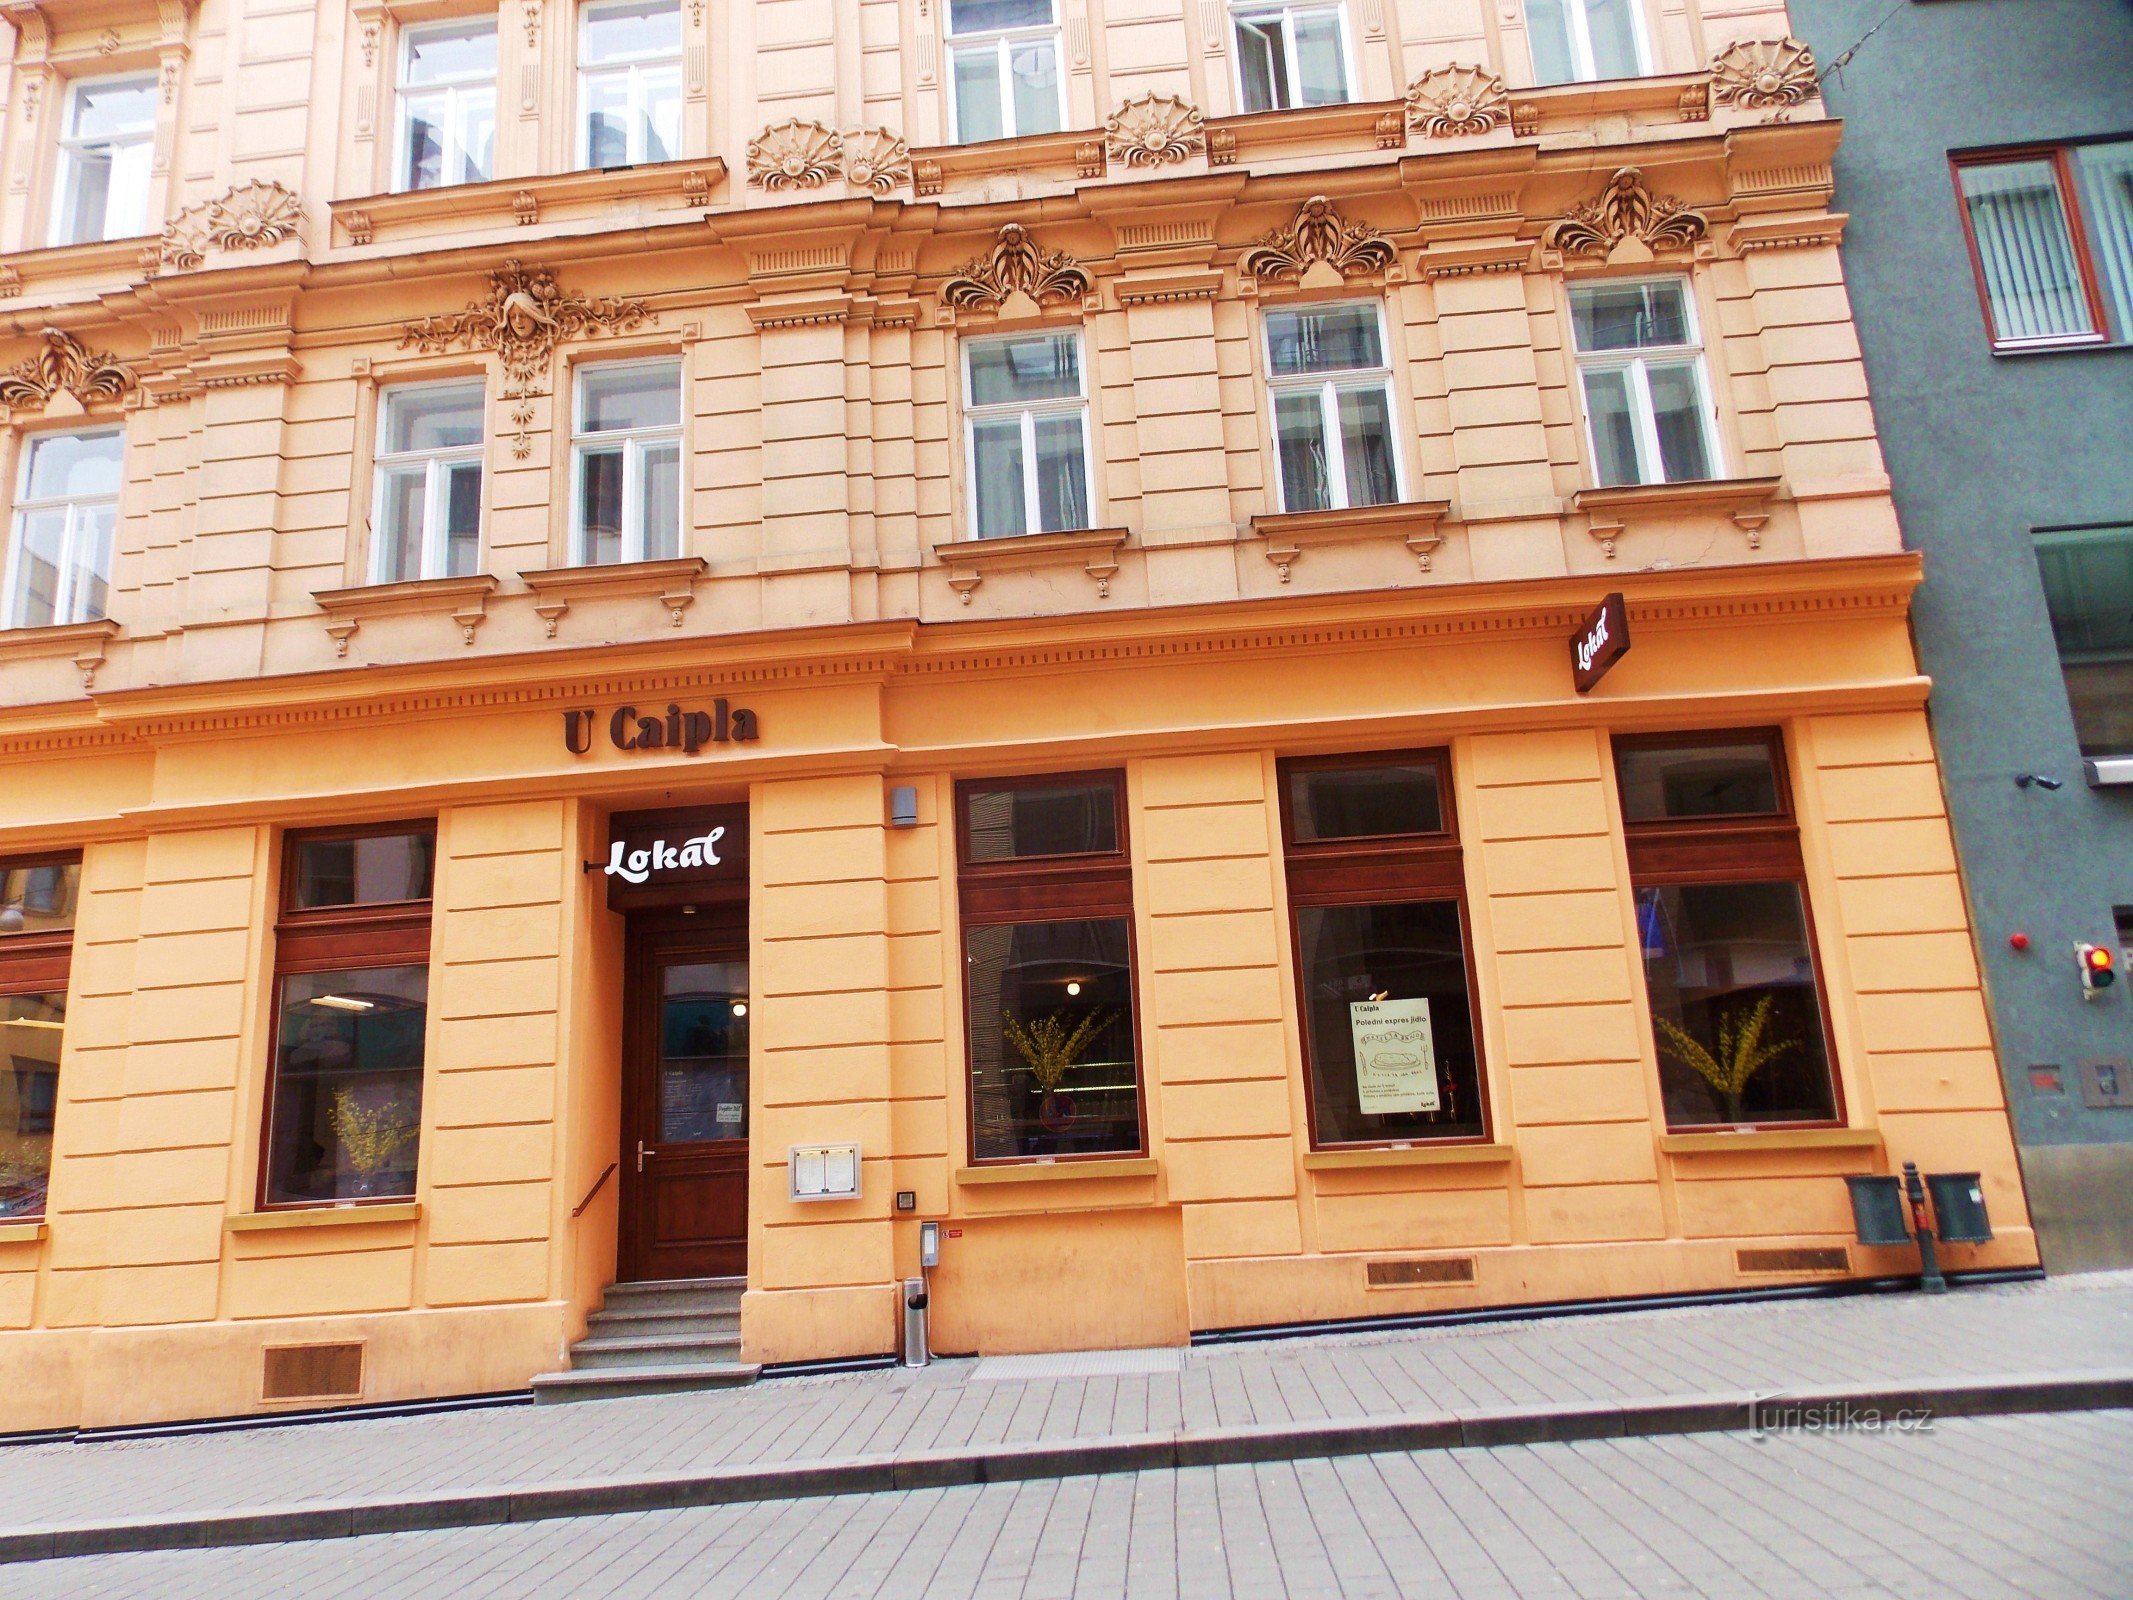 Restauracja - Lokal w pobliżu Caipla w centrum Brna